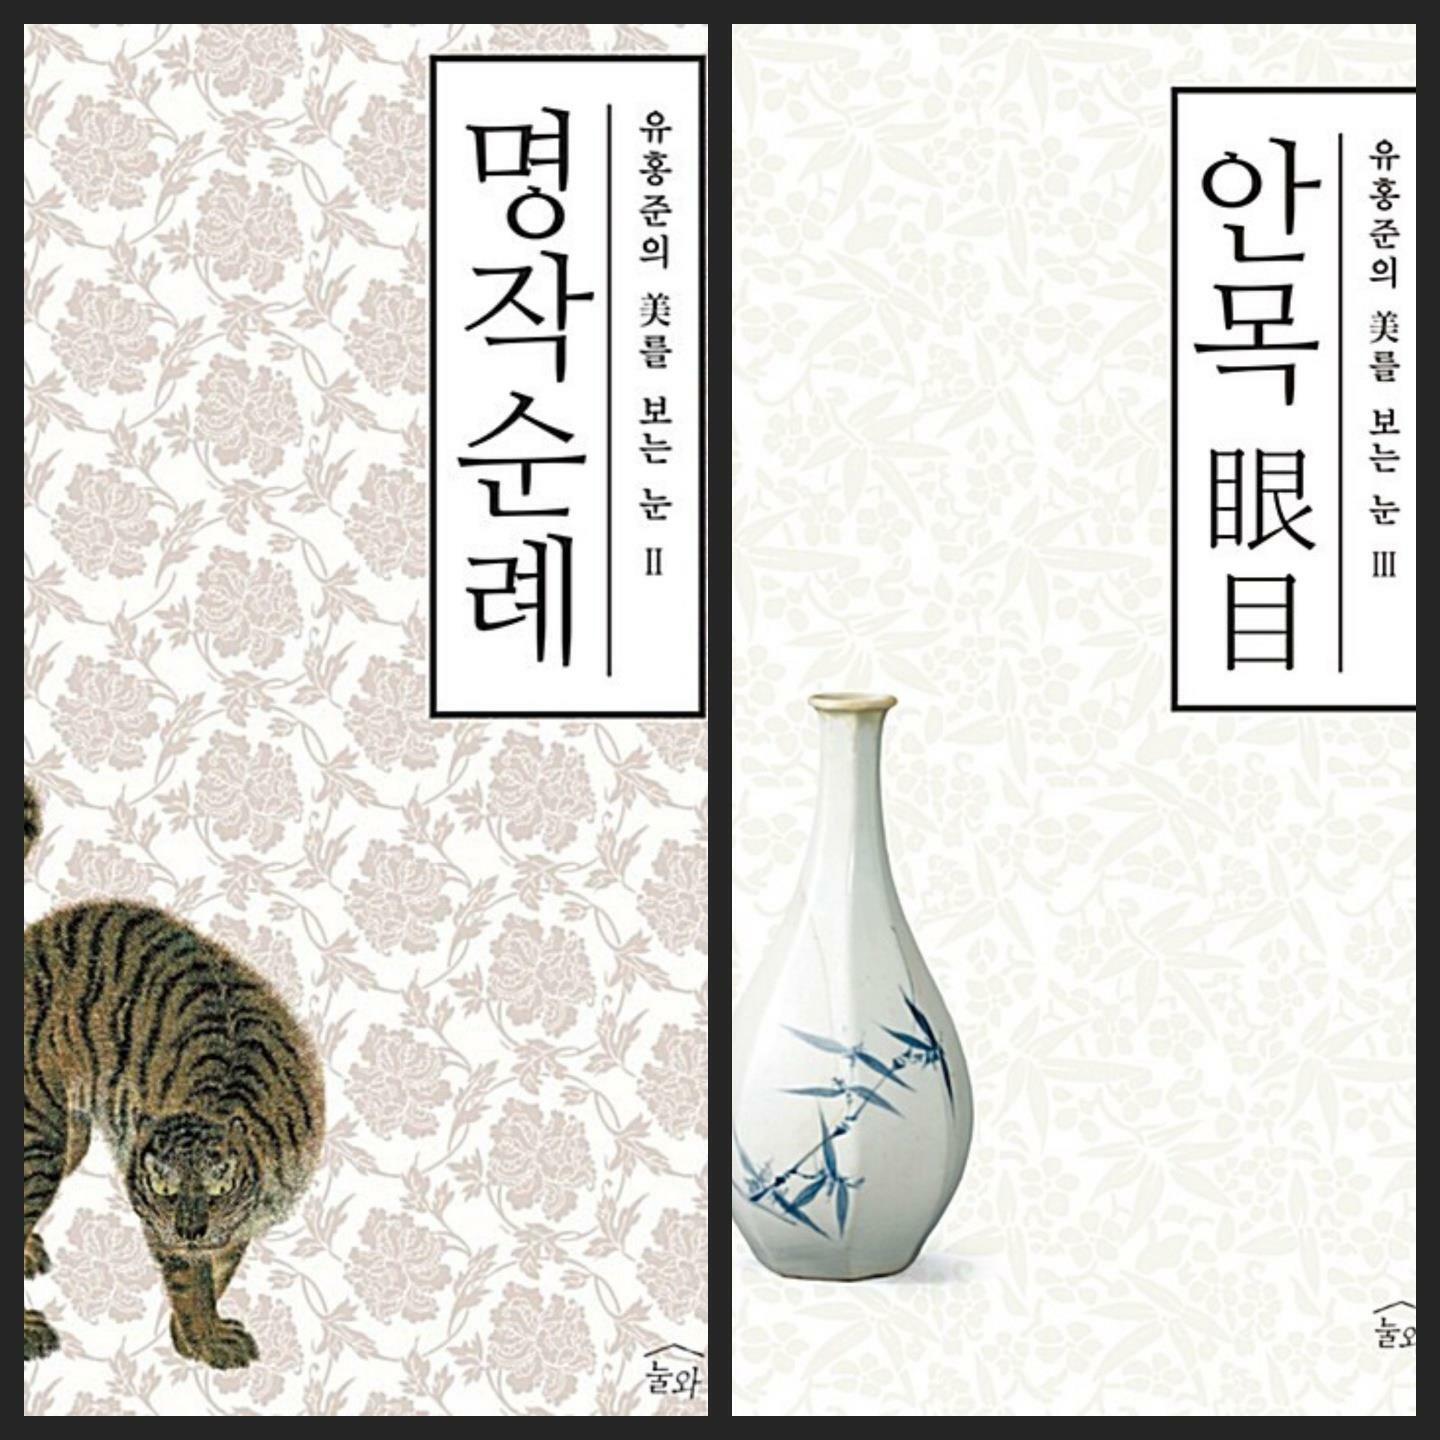 [중고] [세트] 유홍준의 미를 보는 눈 시리즈 (전3권 中 2권)ㅡ> 상품설명 필독!